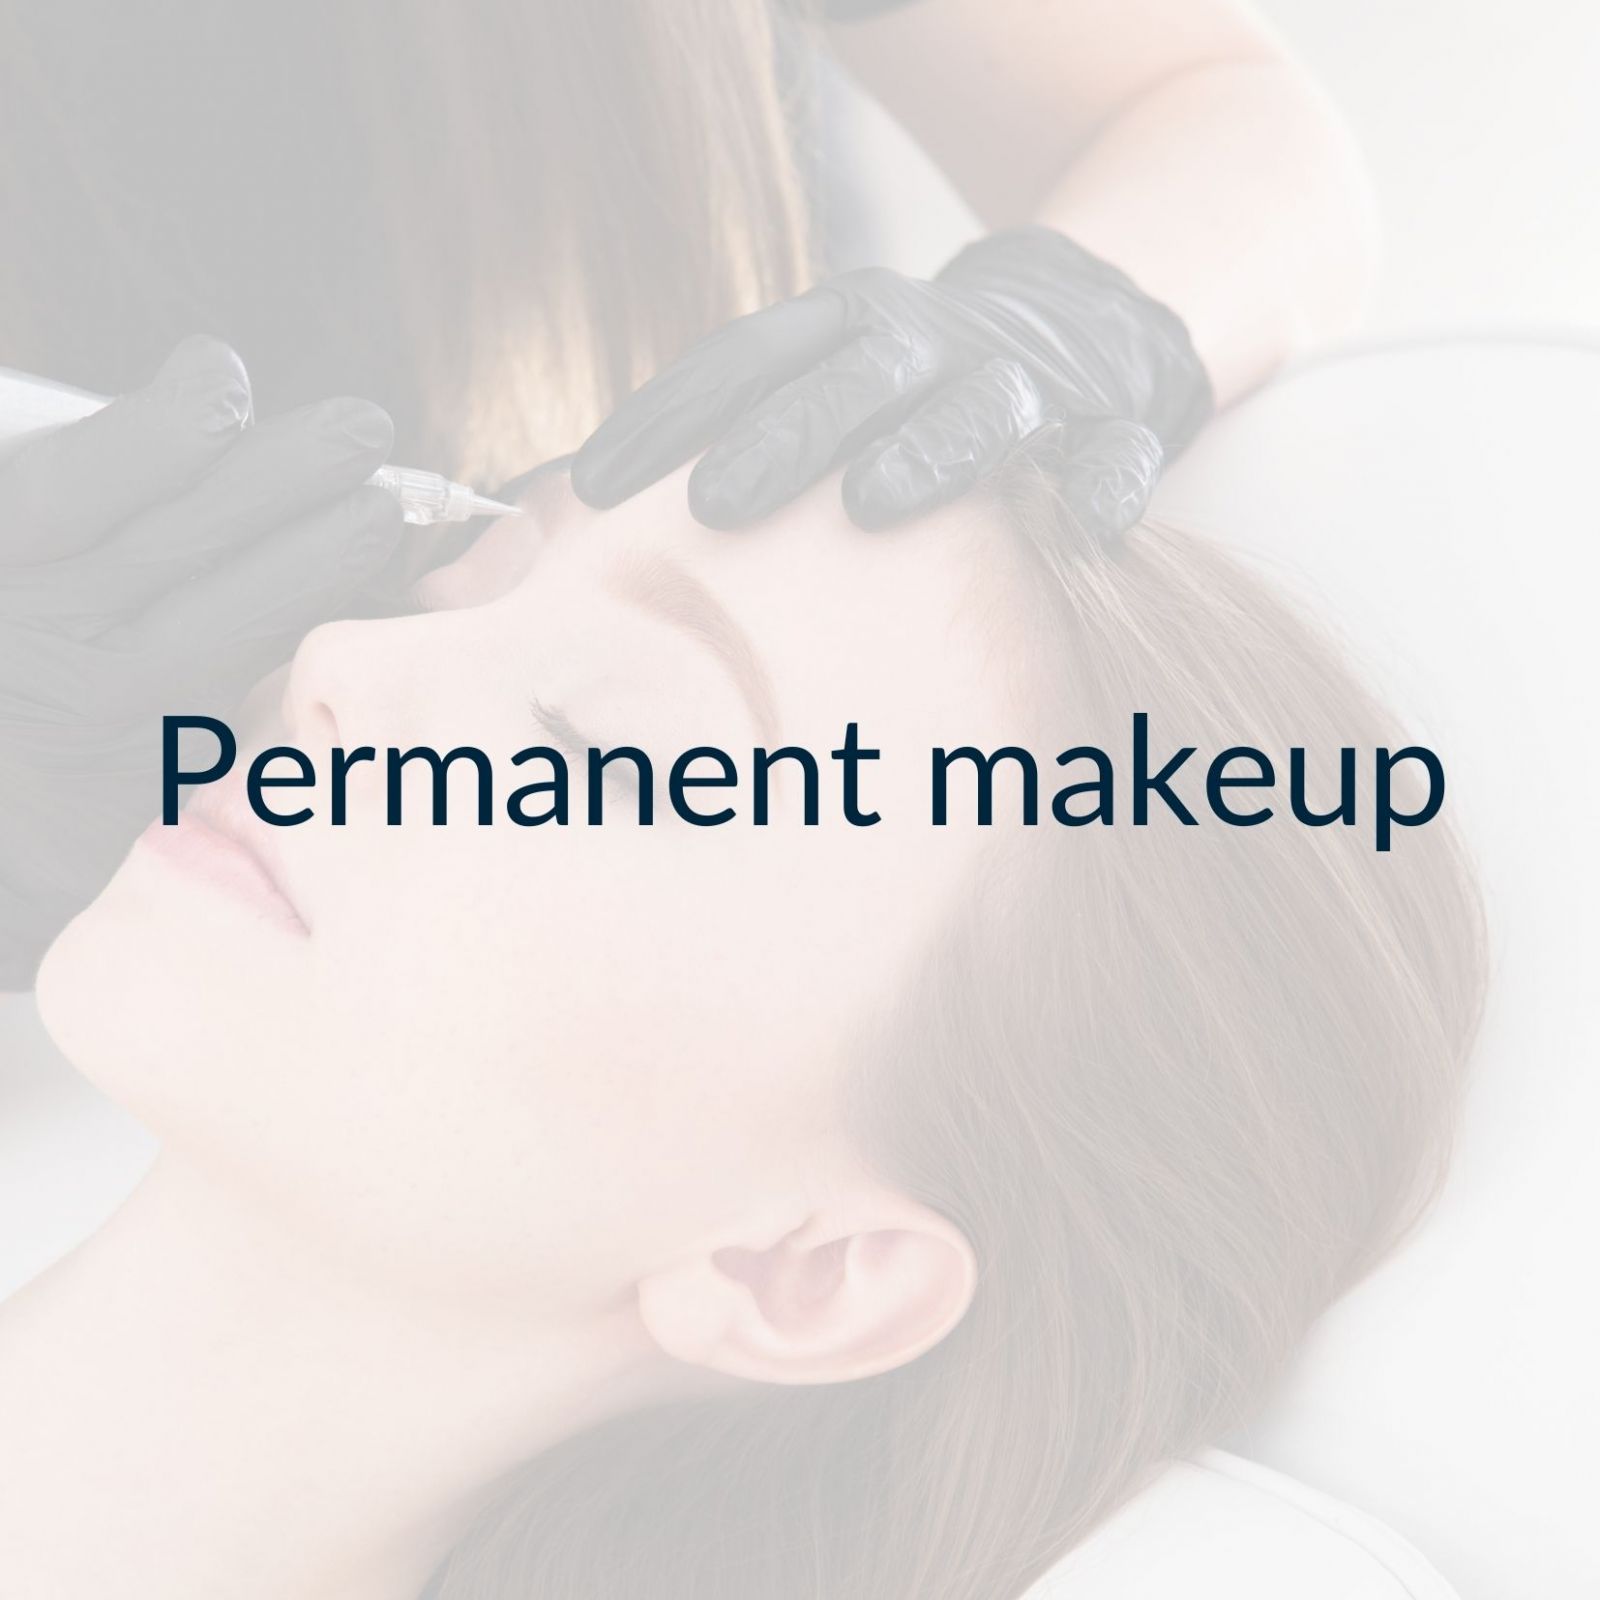 Permanent makeup